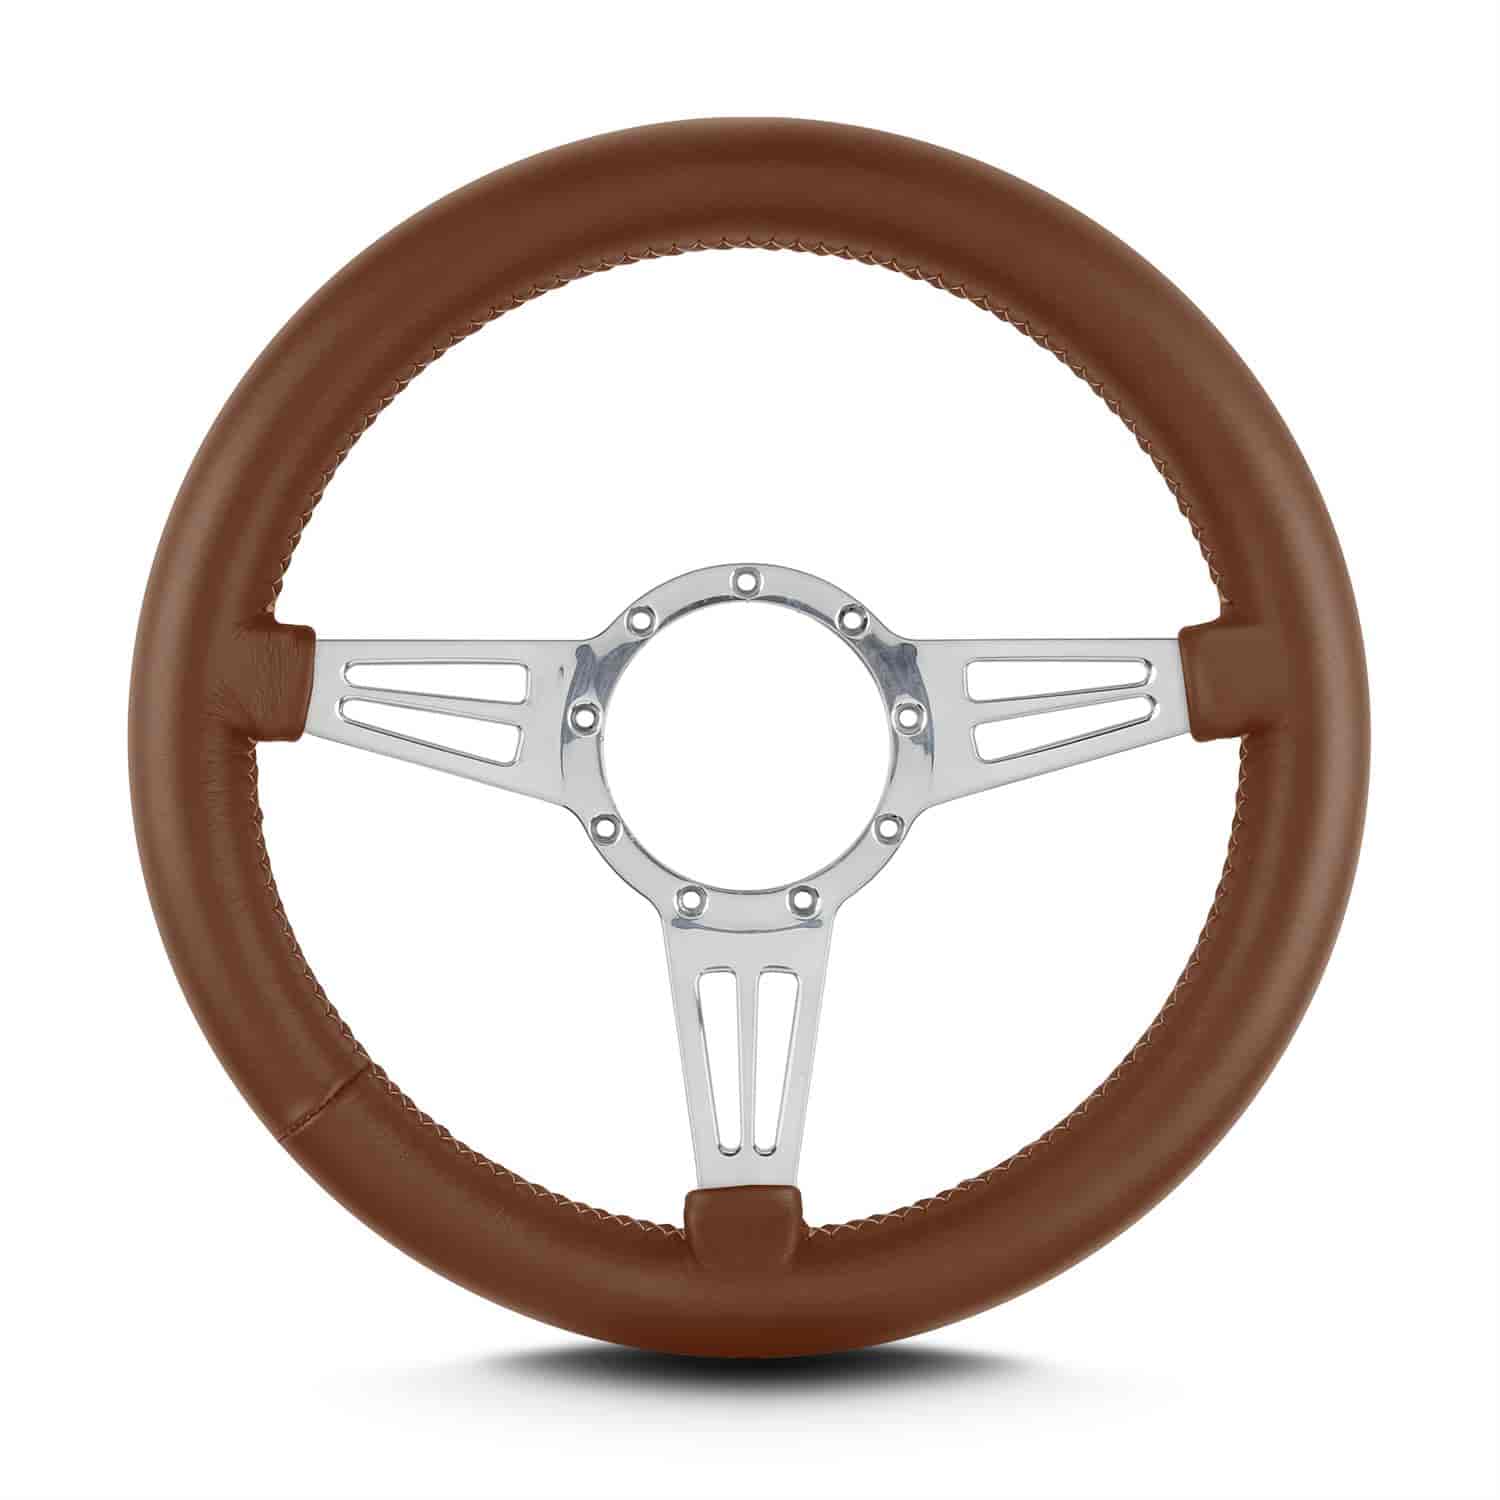 Mark-8 Steering Wheel 14" Diameter